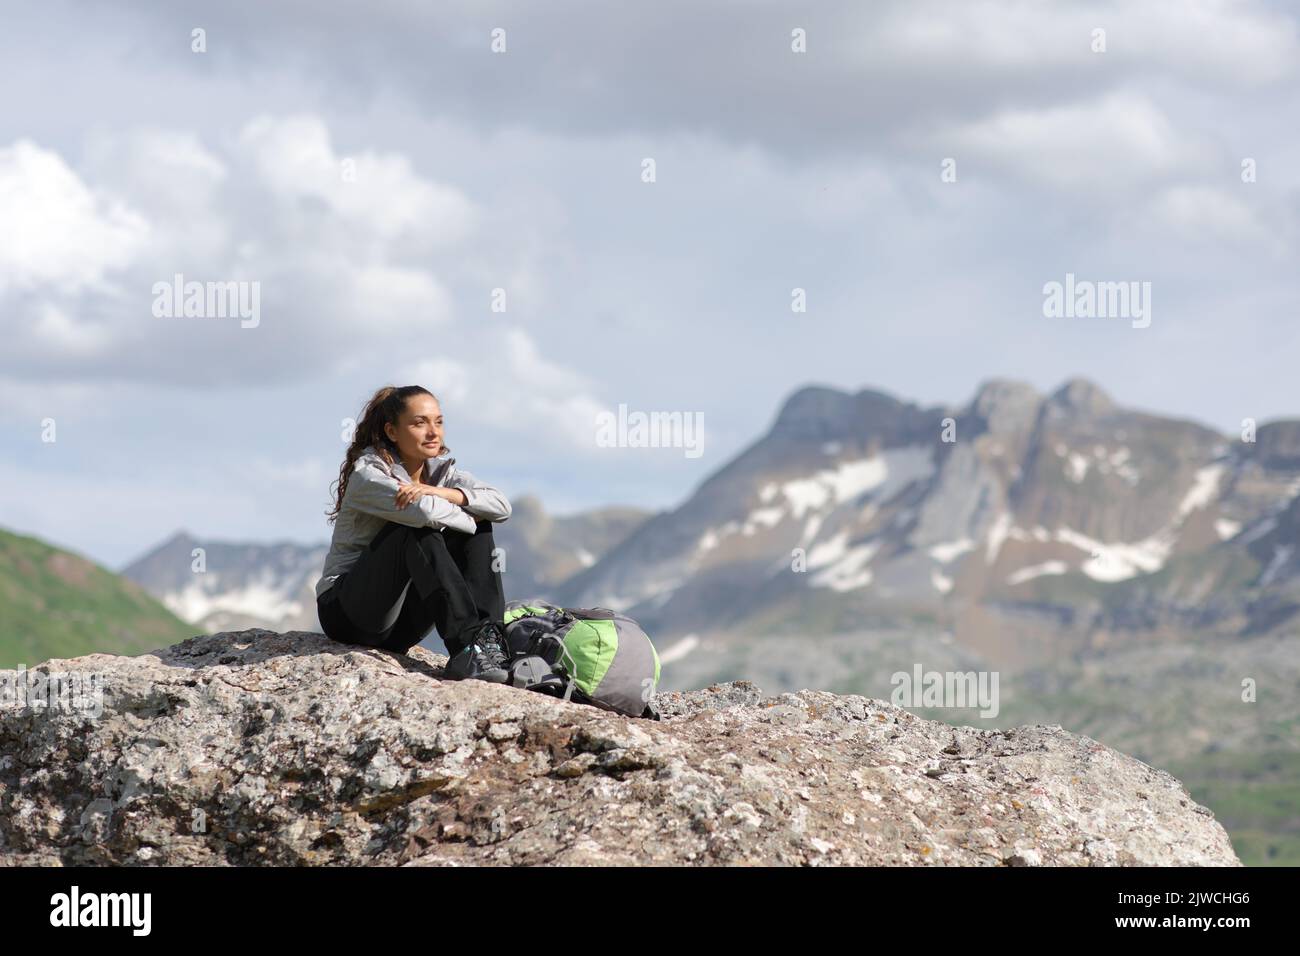 Escursionista in cima a una montagna contemplando viste seduti su una roccia Foto Stock